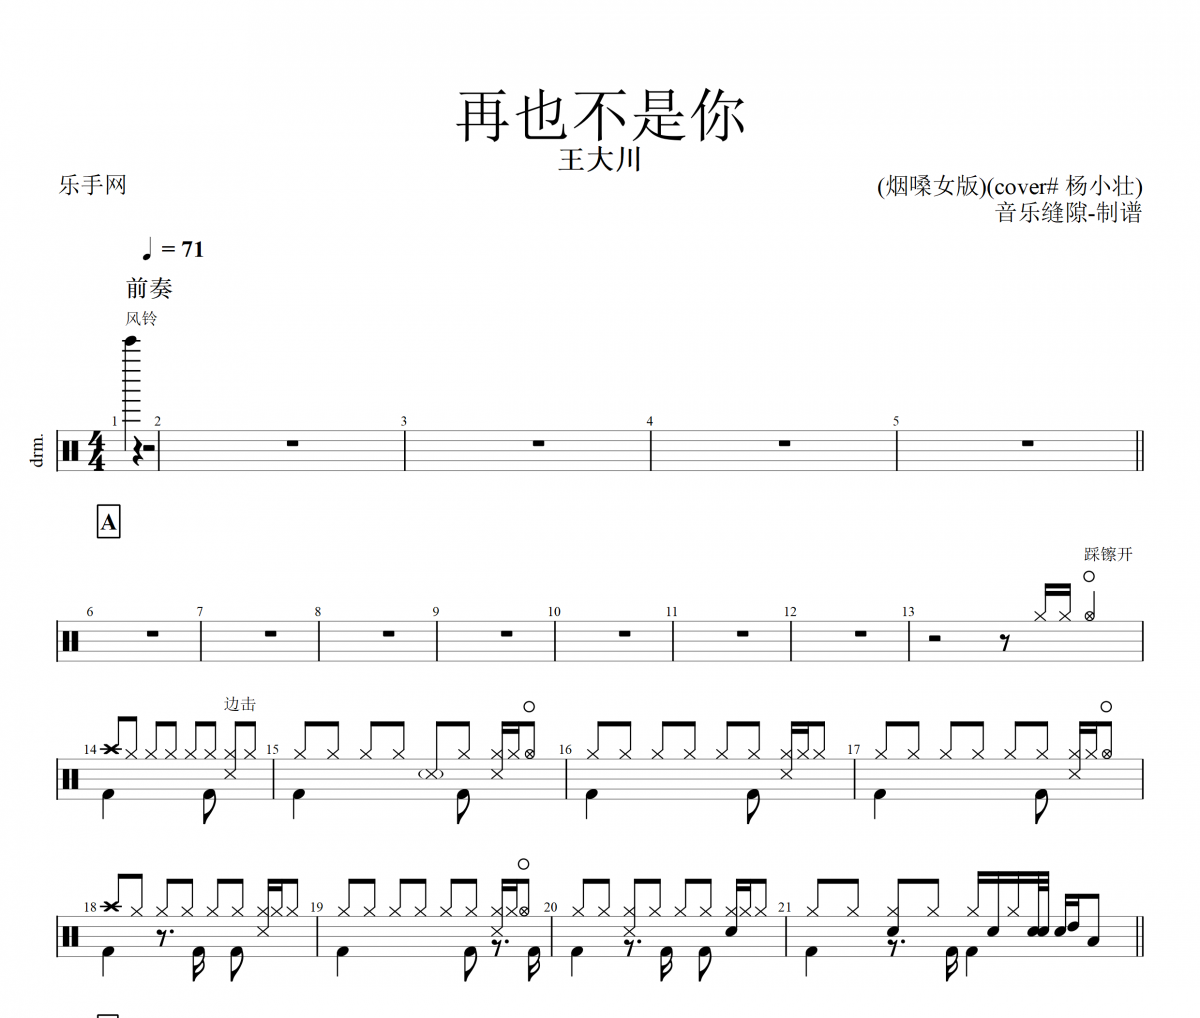 王大川-再也不是你 (烟嗓女版)(cover# 杨小壮)架子鼓谱爵士鼓曲谱